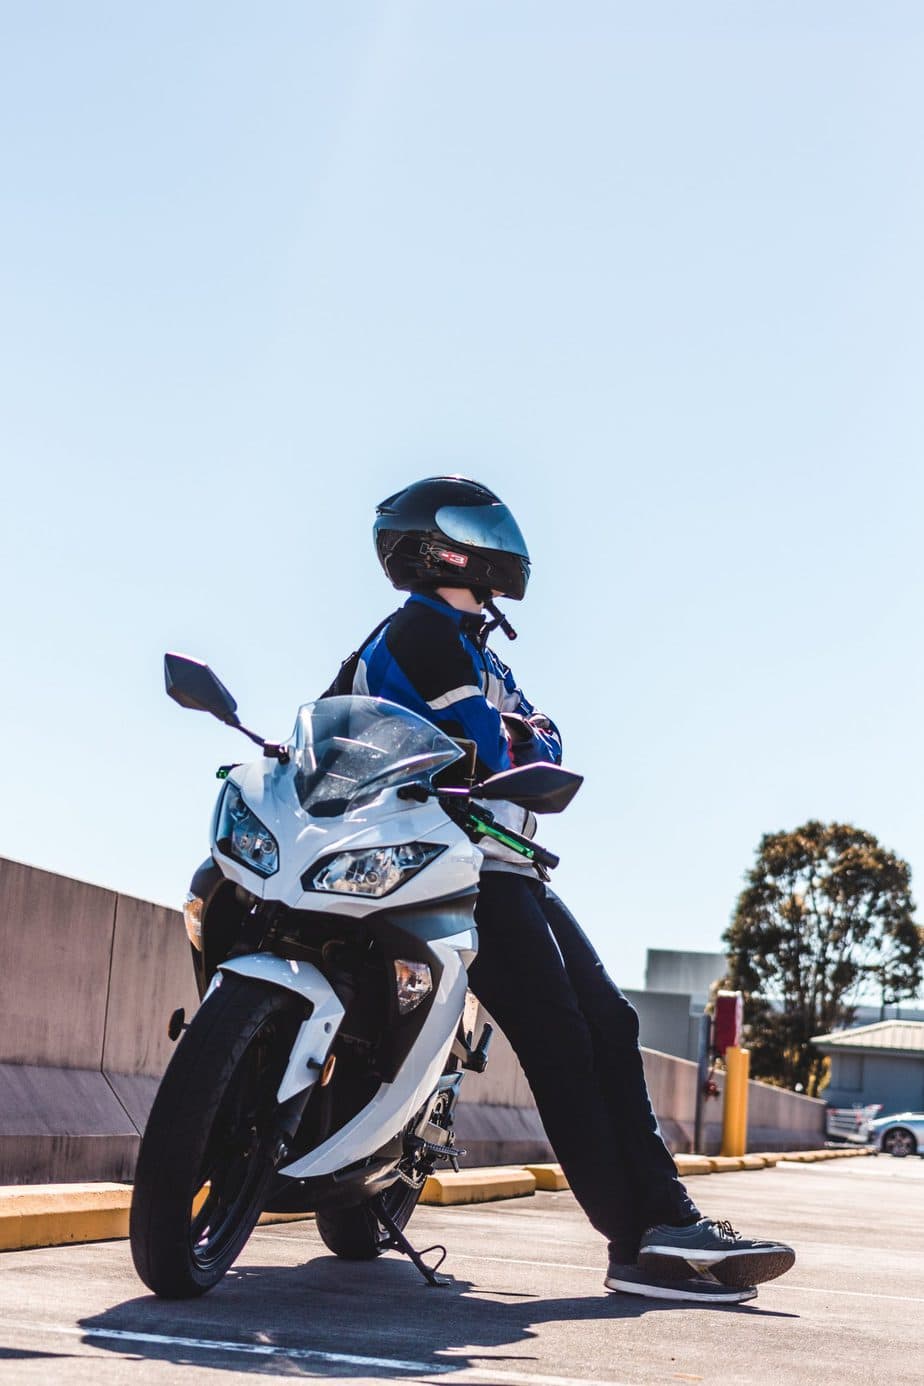 Ładowarka motocyklowa — jak prawidłowo ładować akumulator w motocyklu?